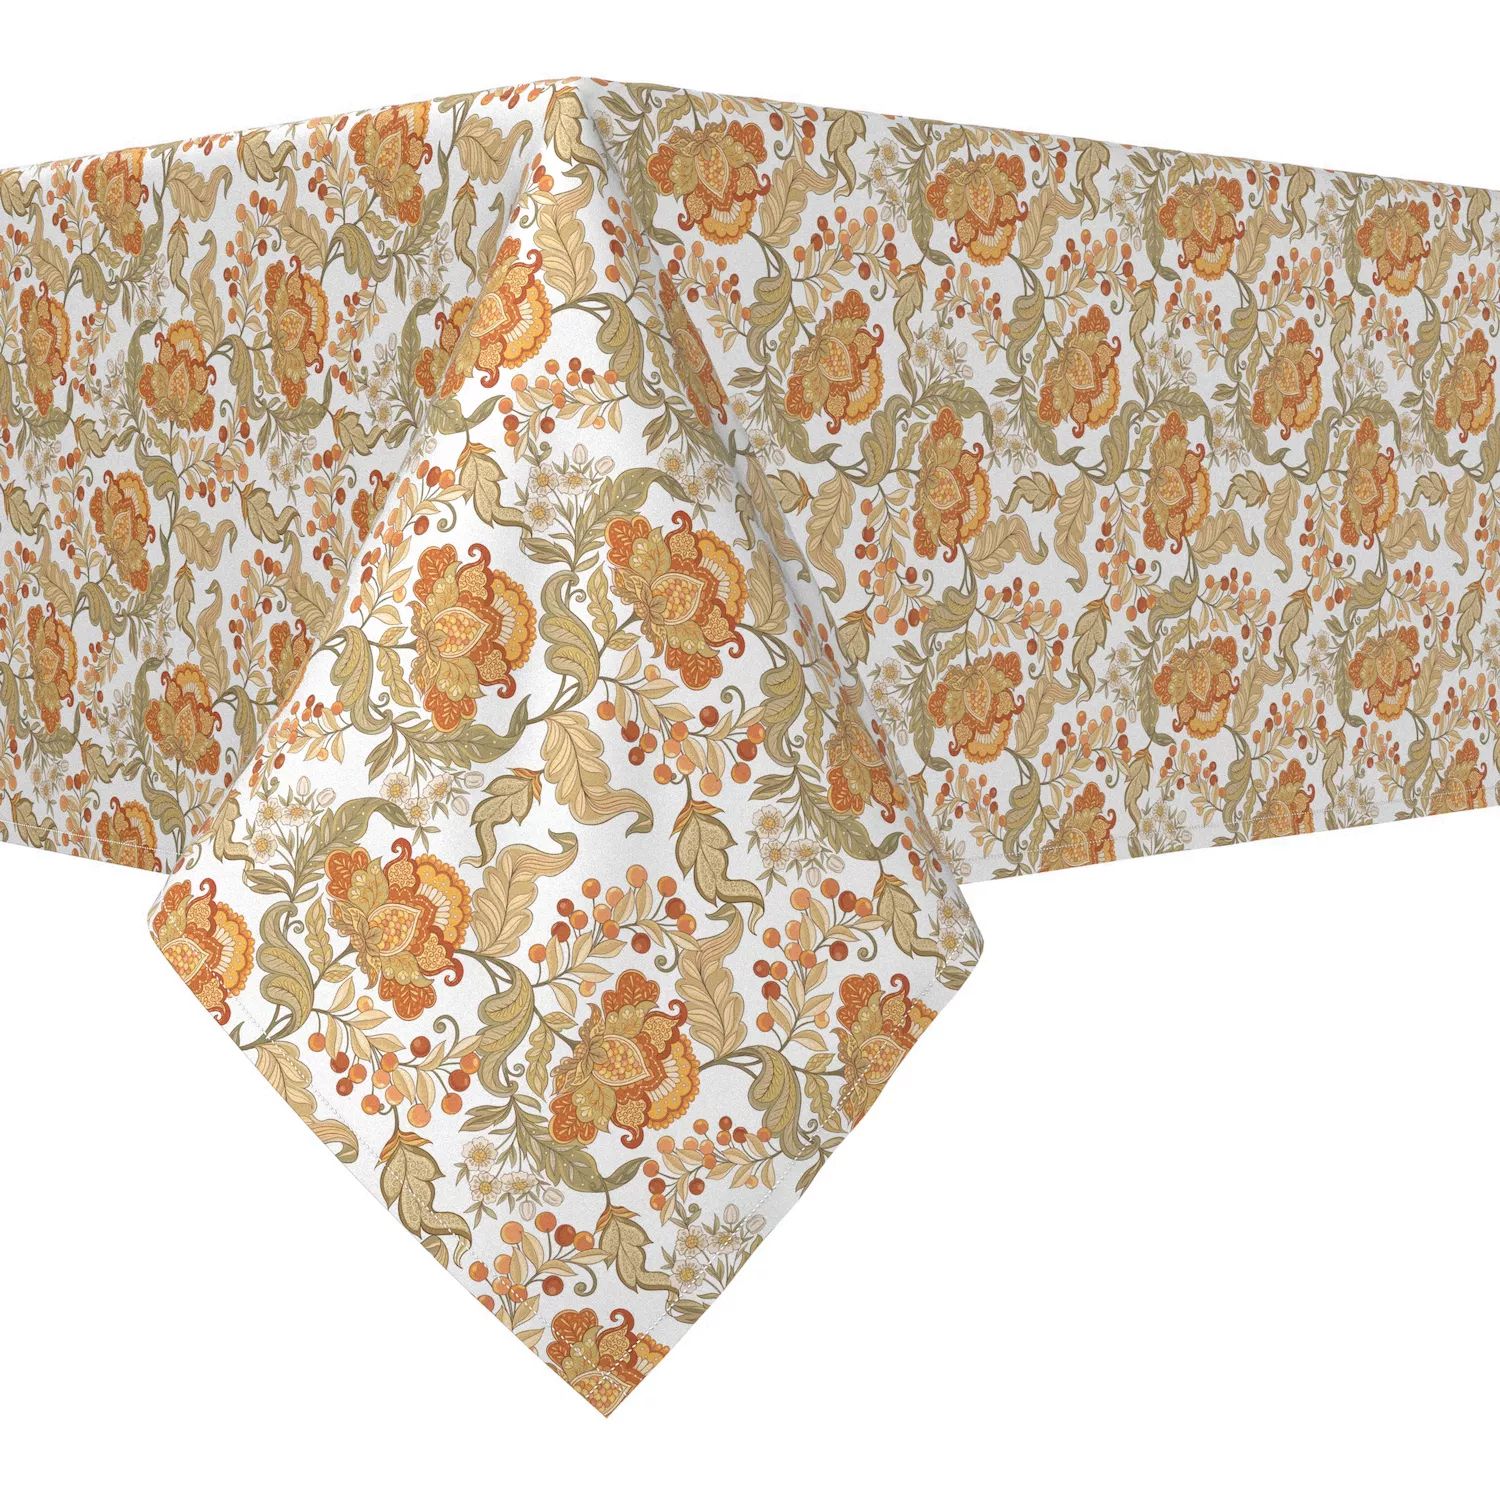 Прямоугольная скатерть, 100 % полиэстер, 60x120 дюймов, с цветочным принтом в винтажном стиле. скатерть кружевная в винтажном стиле хлопковая скатерть в клетку прямоугольная для кухни столовой